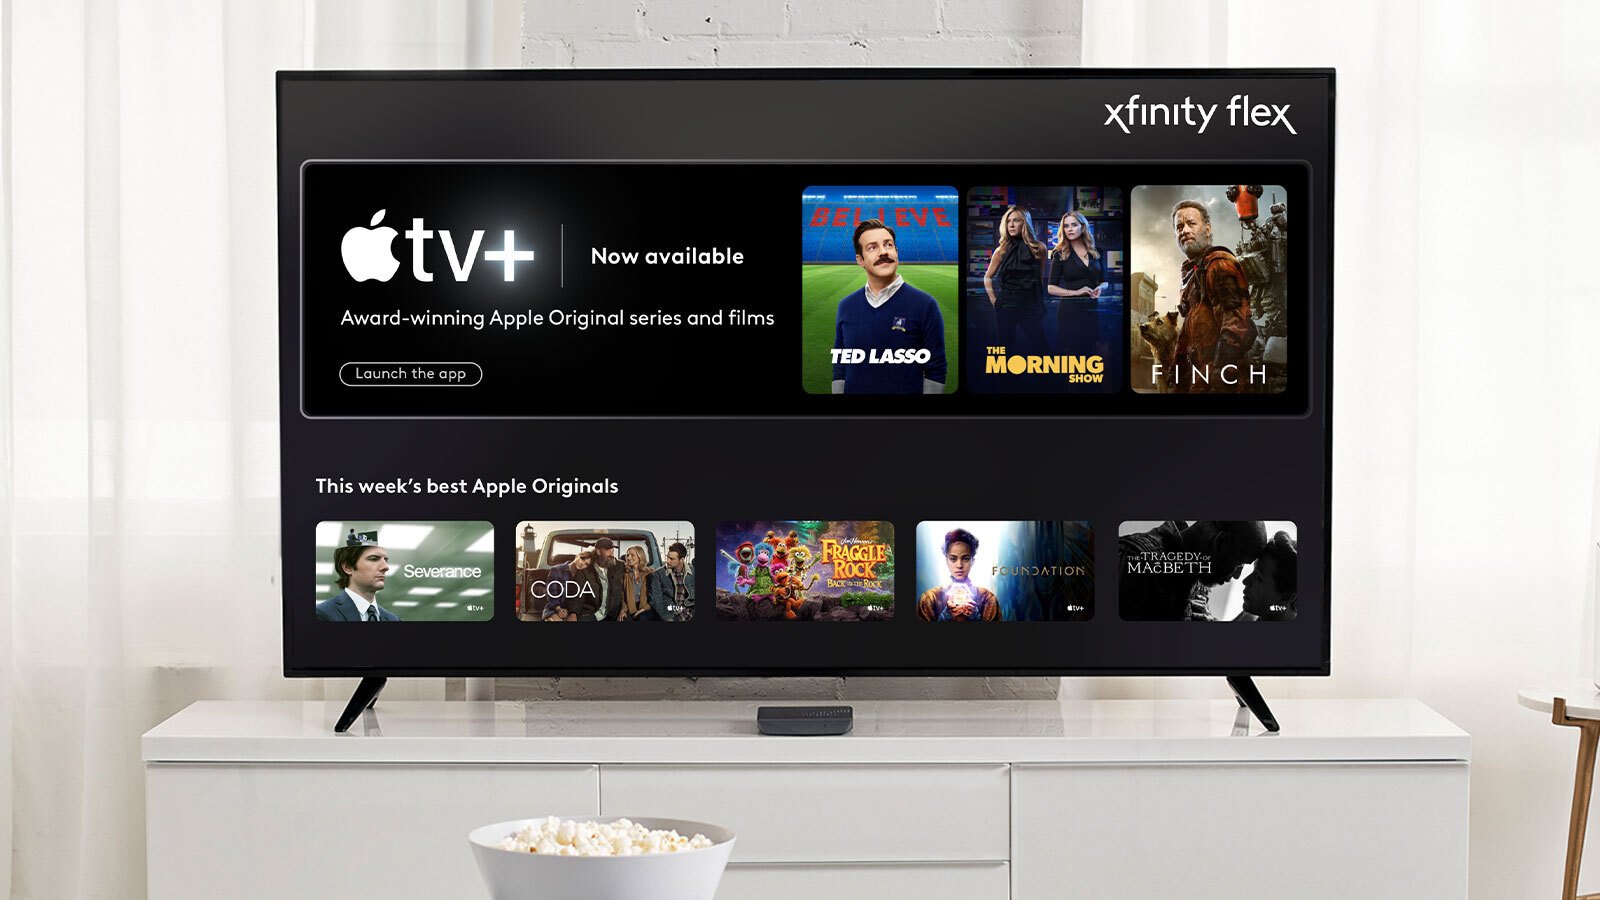 Apple Tv Plus On Xfinity